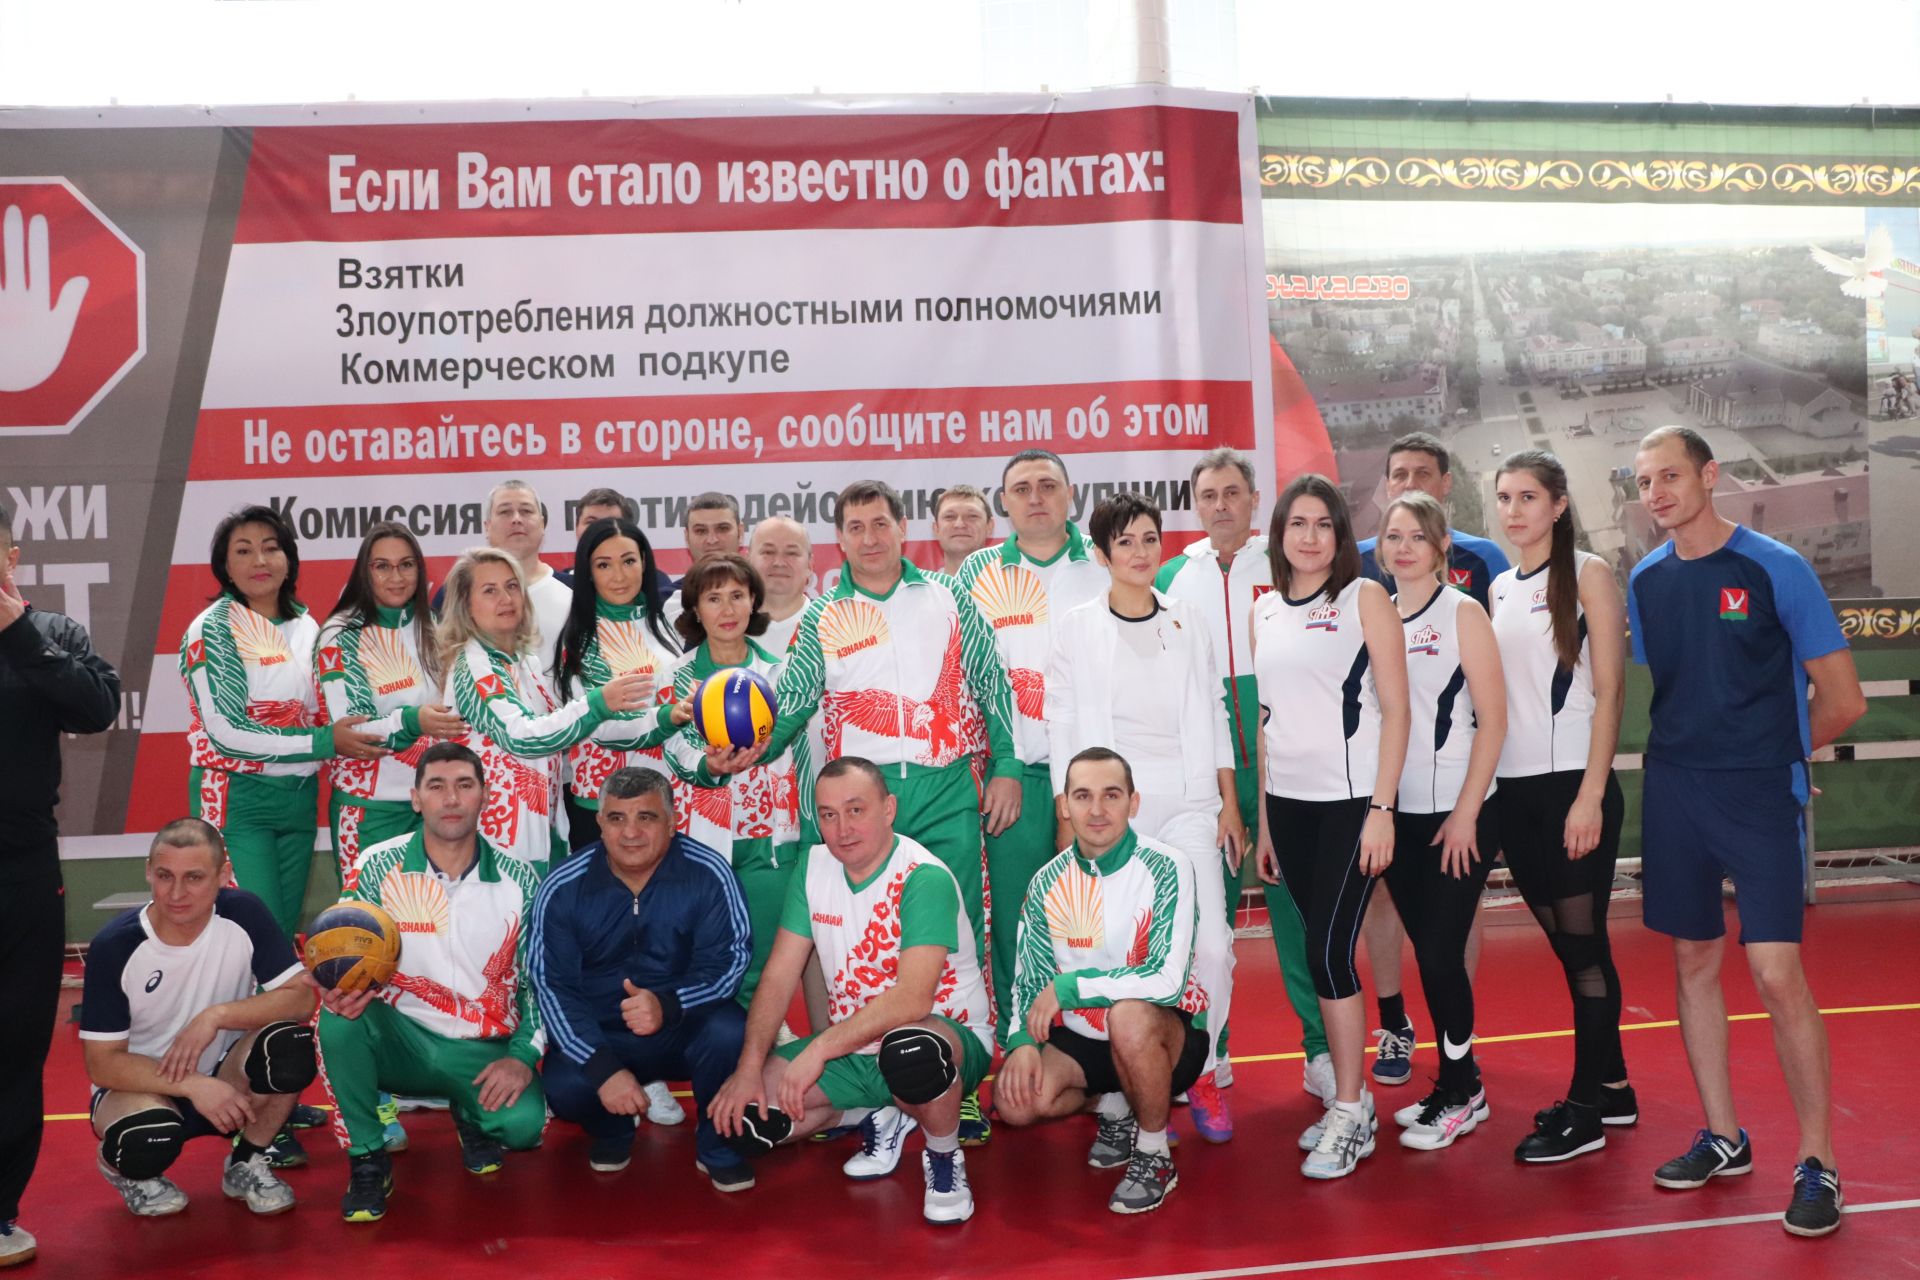 В Азнакаево состоялись соревнования по волейболу, посвященные Международному дню борьбы против коррупции (ФОТО)